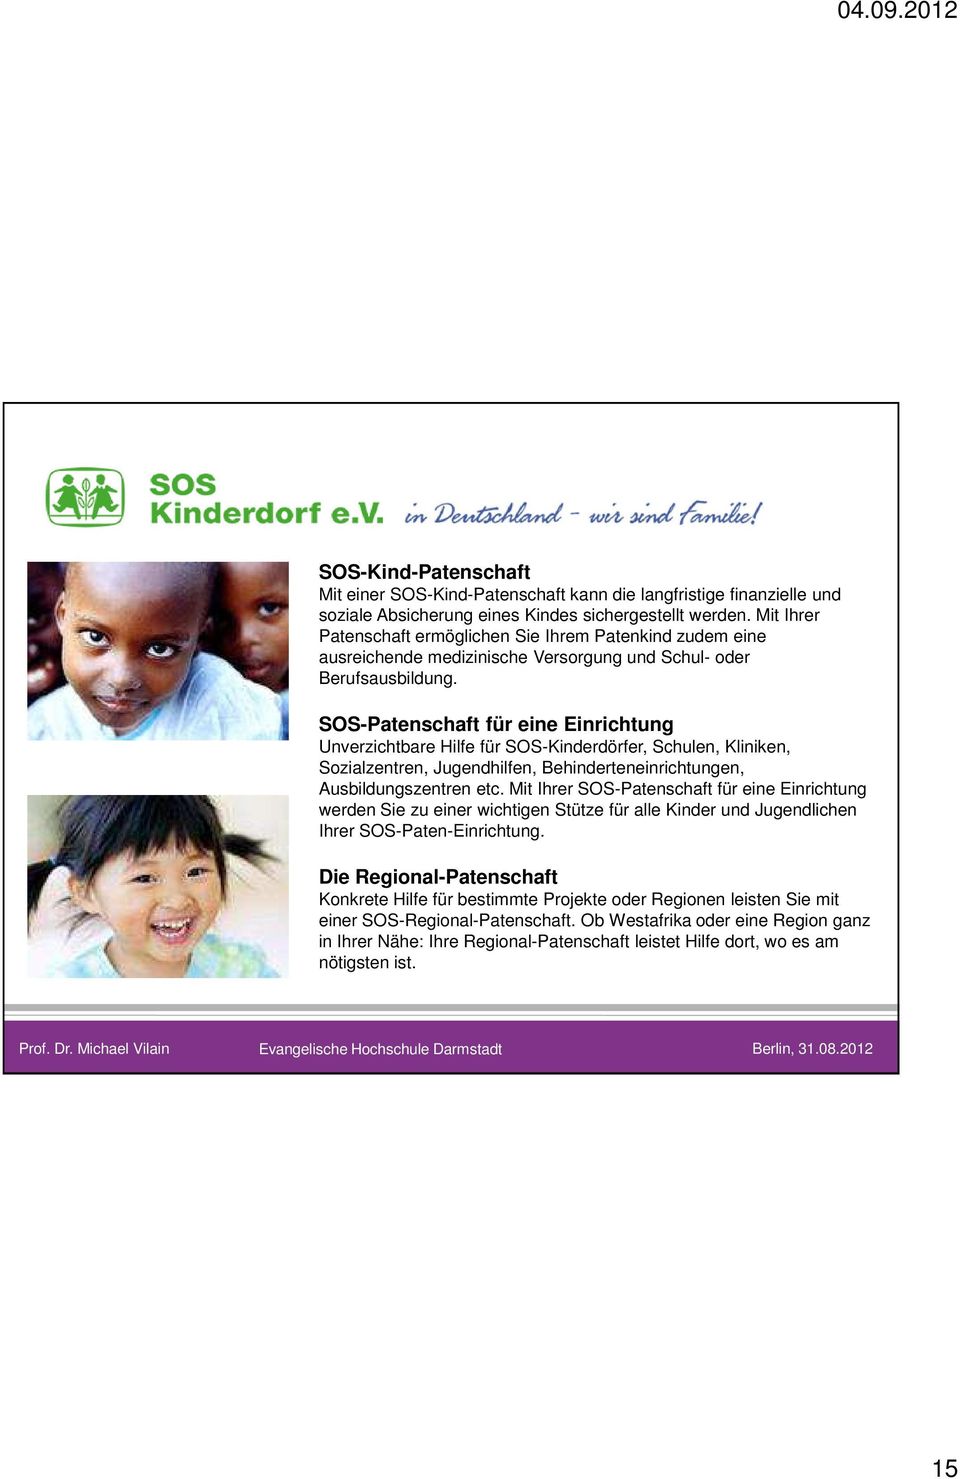 SOS-Patenschaft für eine Einrichtung Unverzichtbare Hilfe für SOS-Kinderdörfer, Schulen, Kliniken, Sozialzentren, Jugendhilfen, Behinderteneinrichtungen, Ausbildungszentren etc.